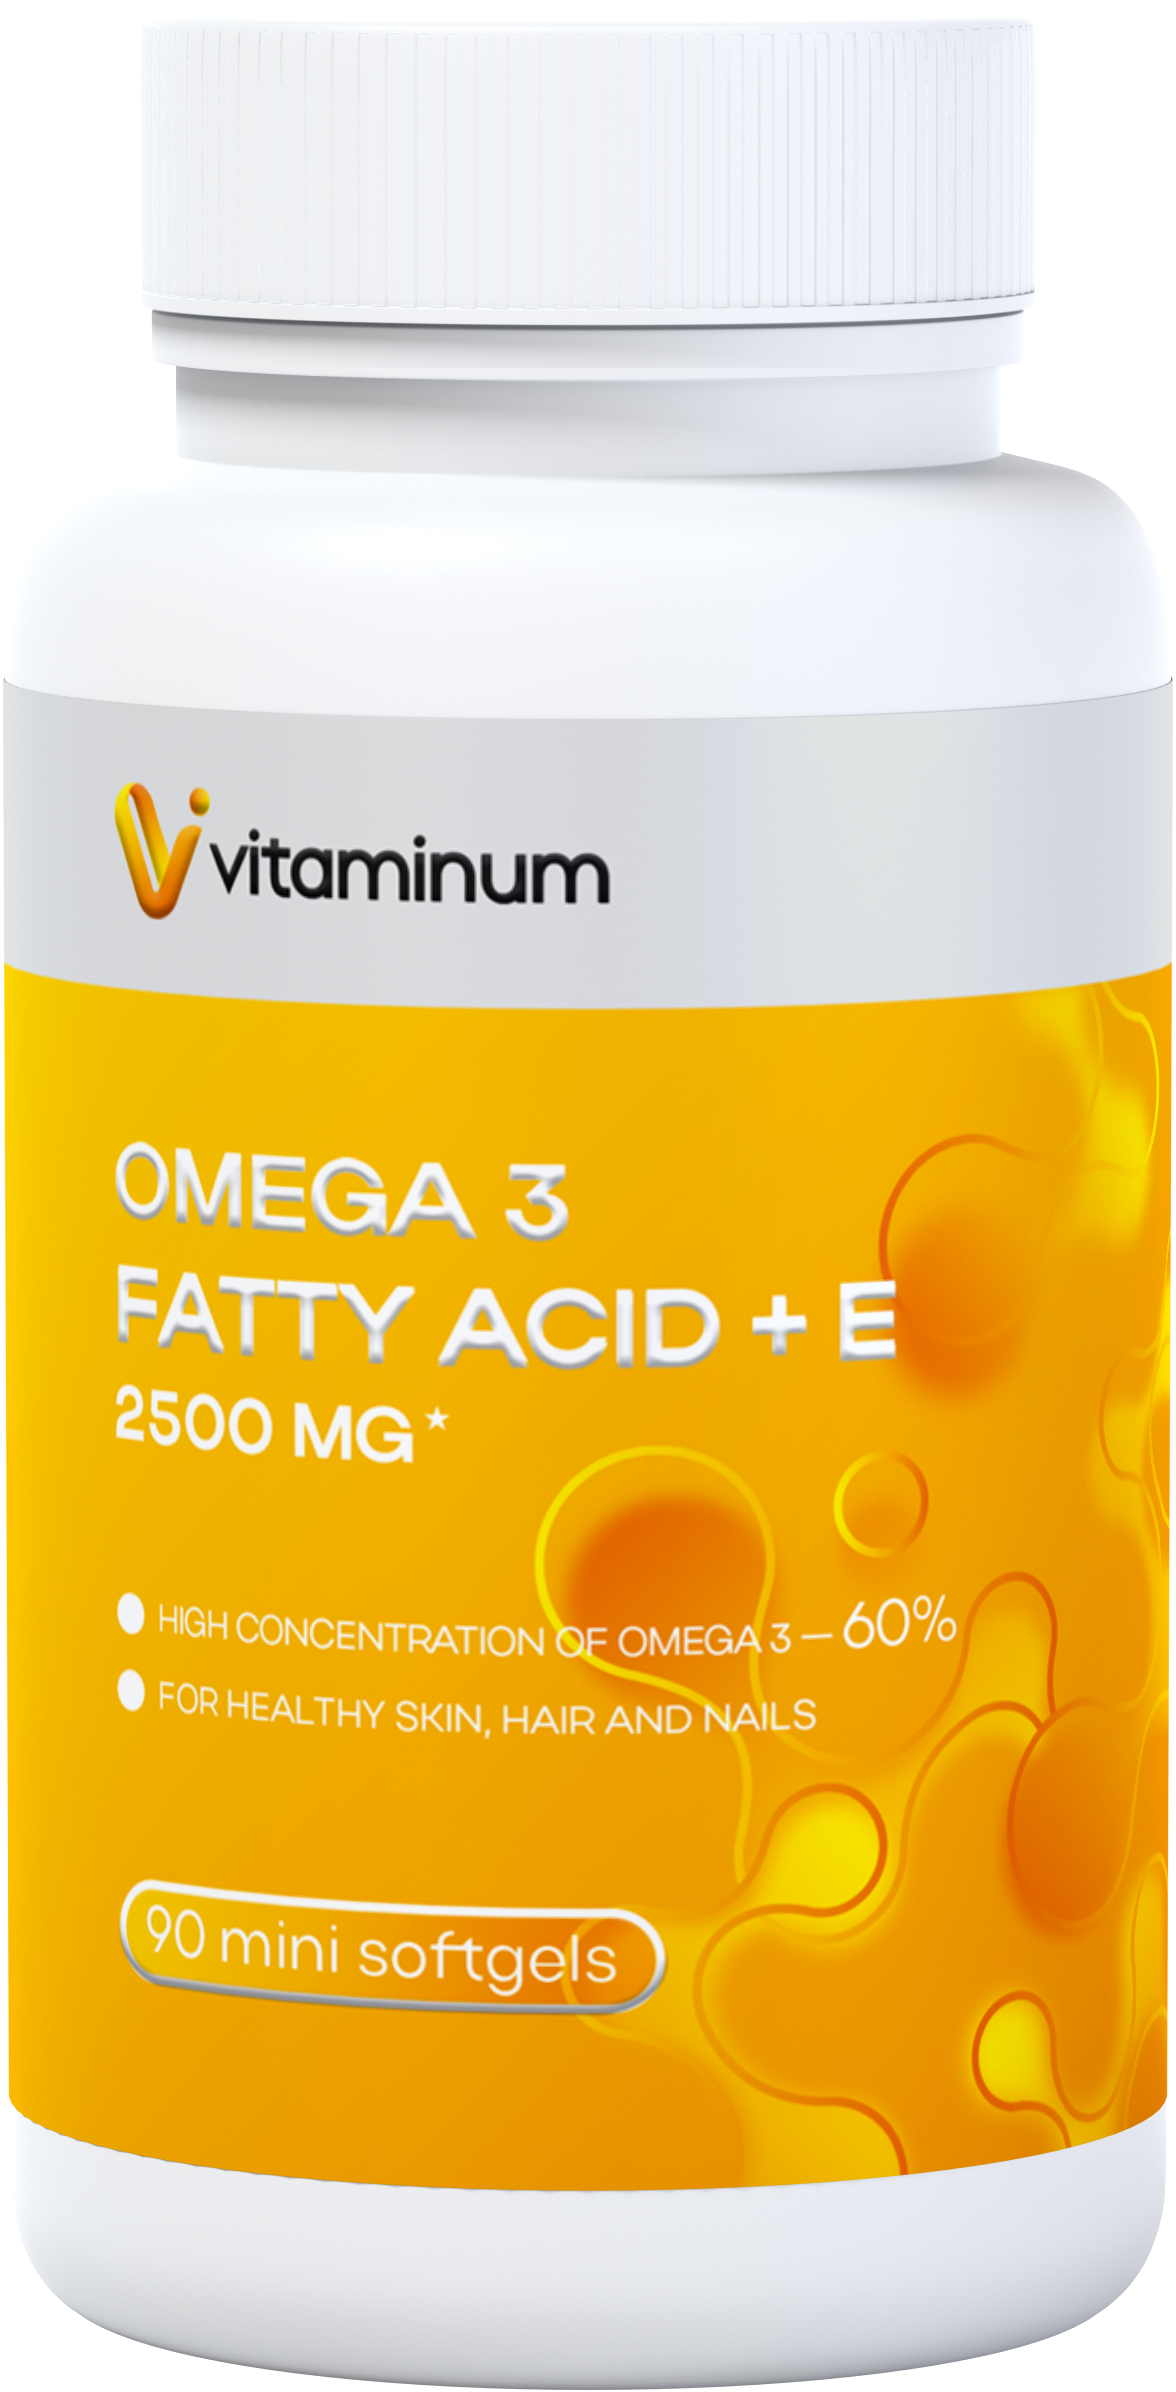  Vitaminum ОМЕГА 3 60% + витамин Е (2500 MG*) 90 капсул 700 мг   в Инте